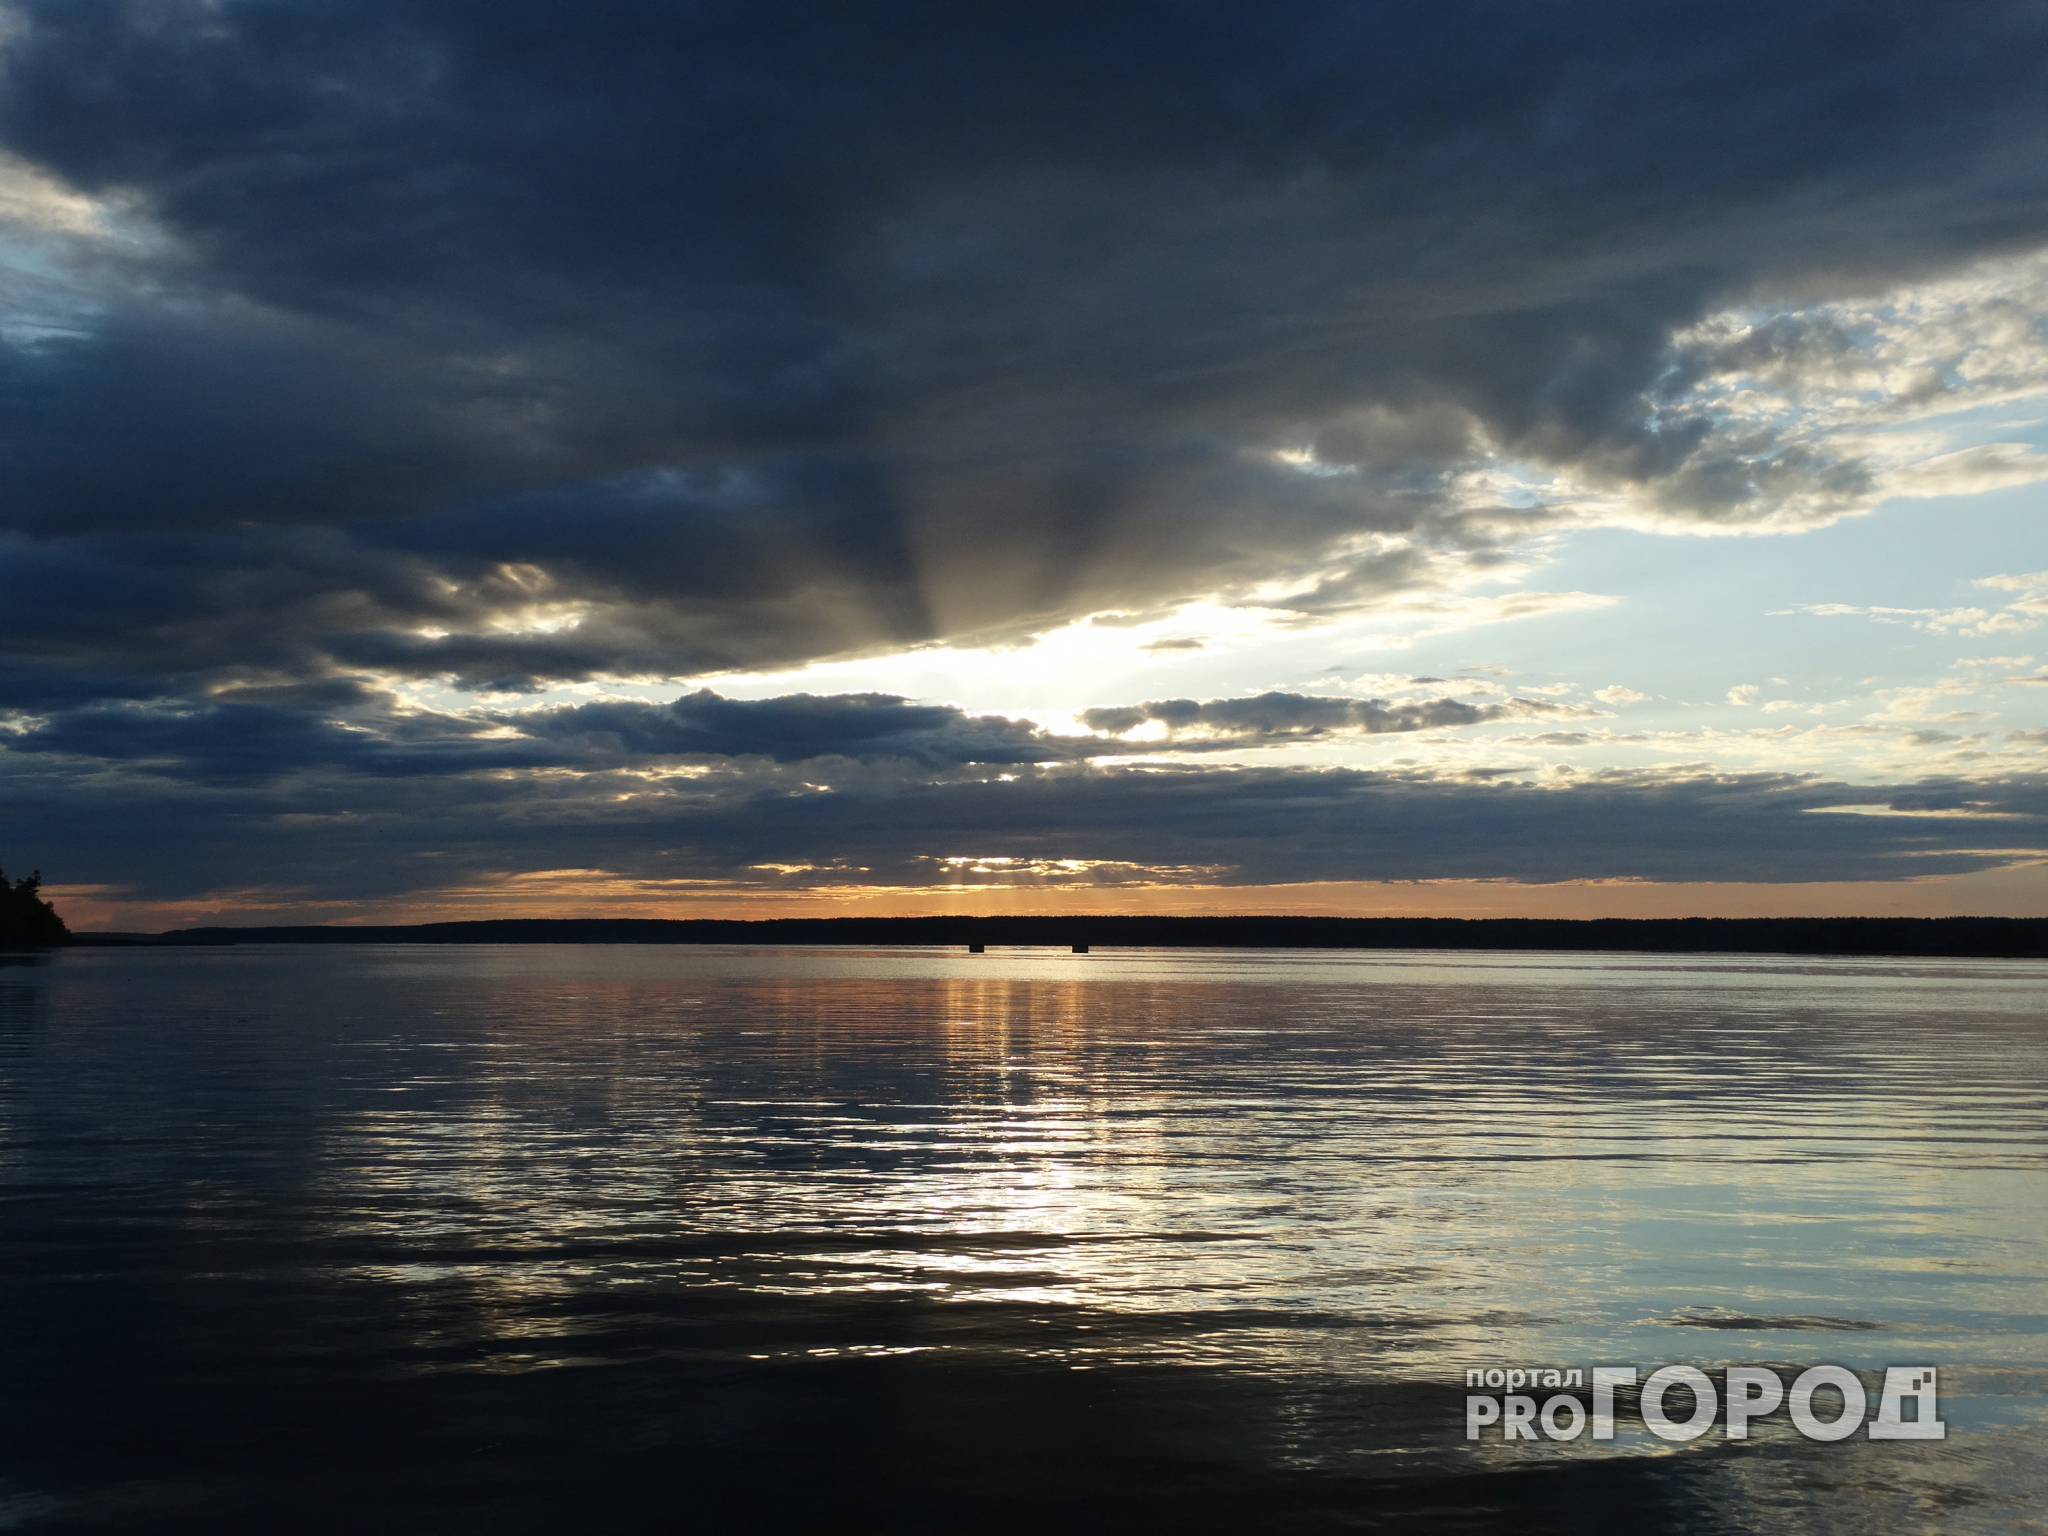 Волга в Марий Эл: интересные факты об одной из самых красивых рек